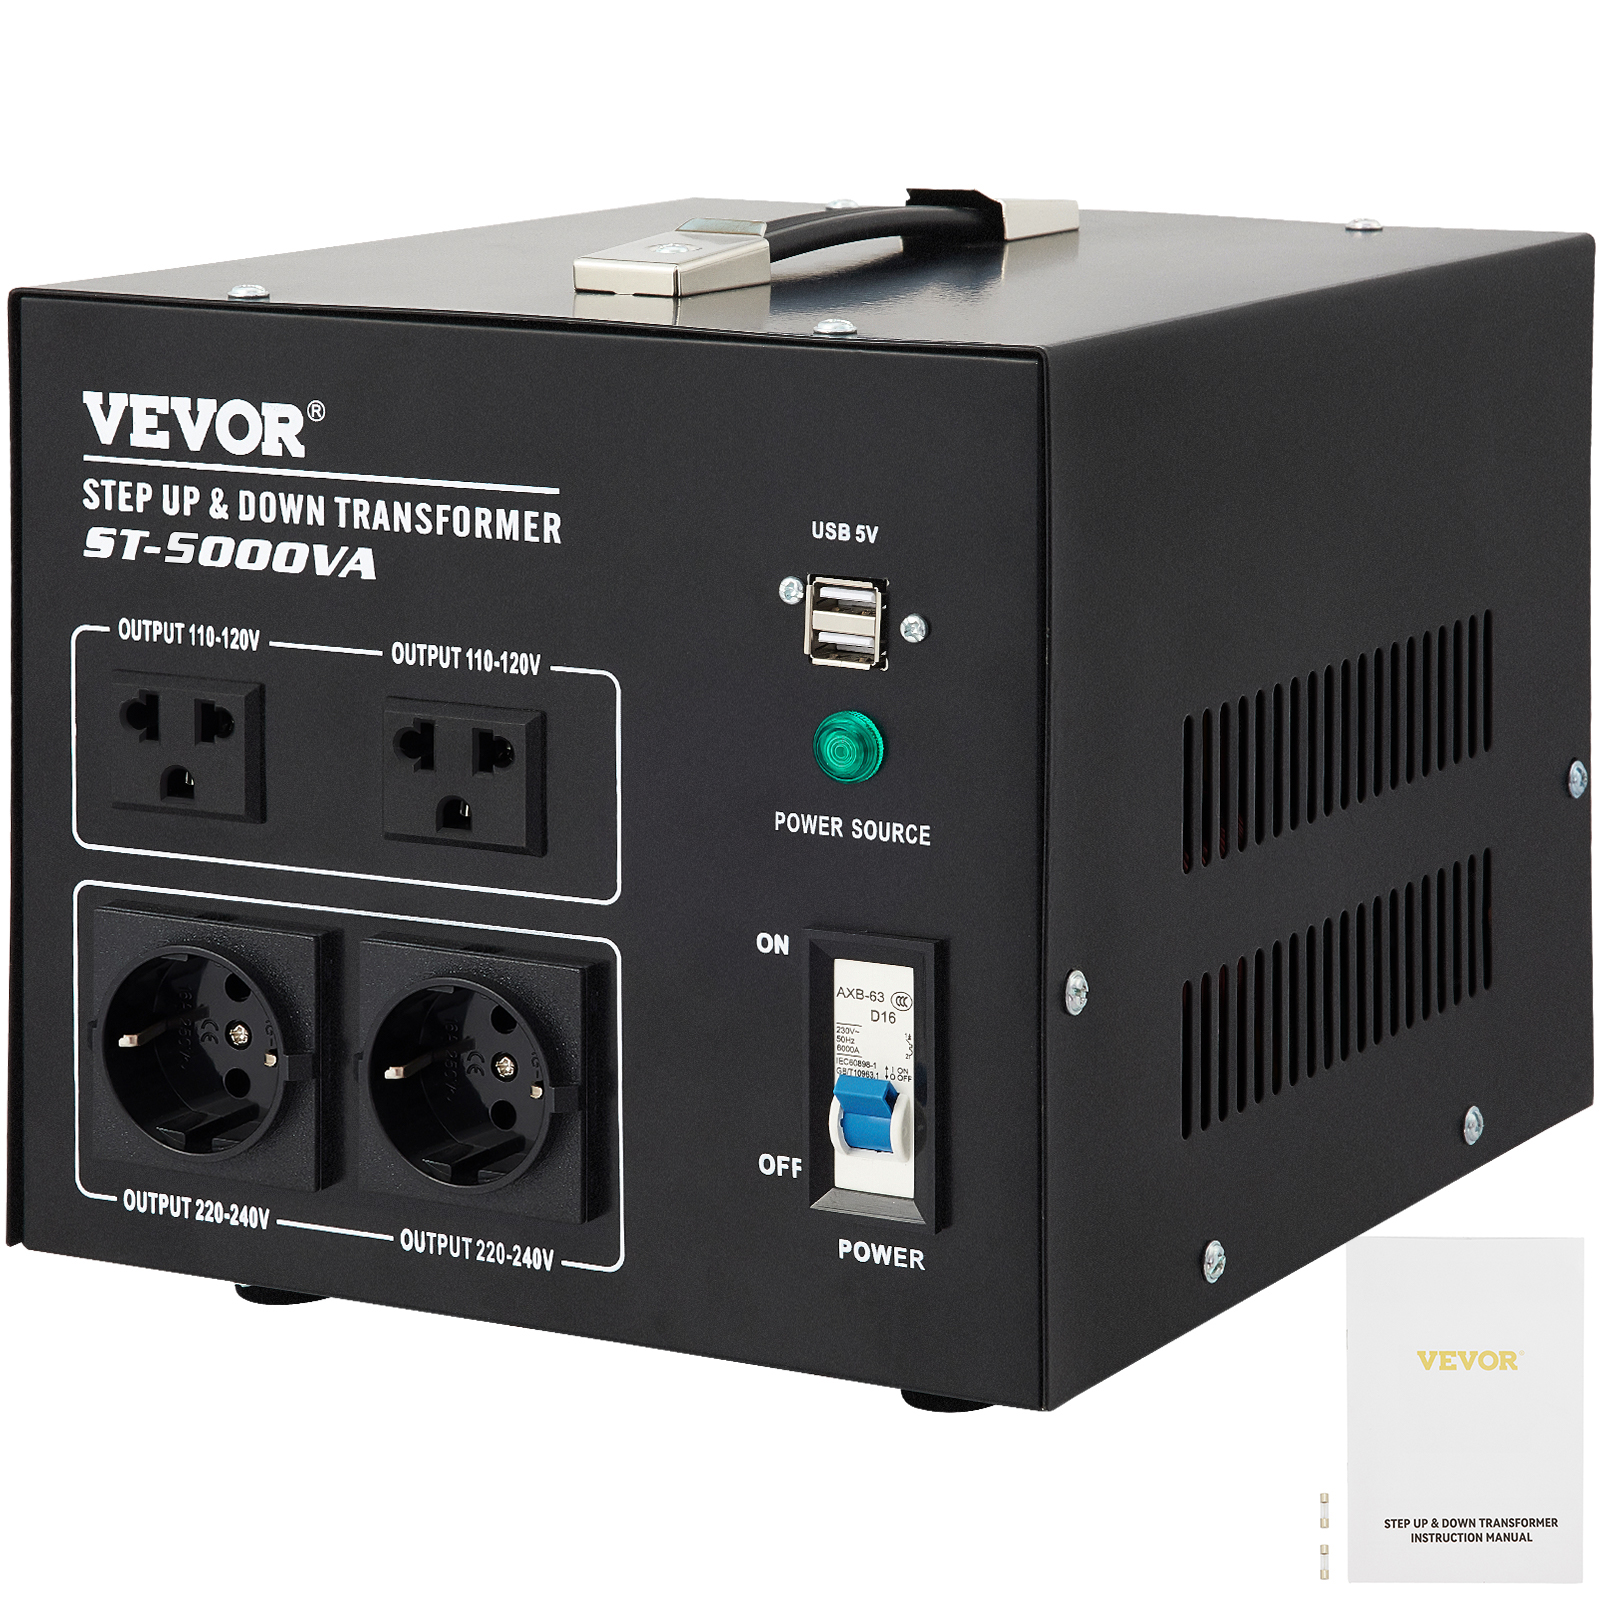 VEVOR Voltage Converter Transformer,5000W Heavy Duty Step Up/Down Transformer Converter(240V to 110V, 110V to 240V),2 US&1 UK&1 Universal Outlet